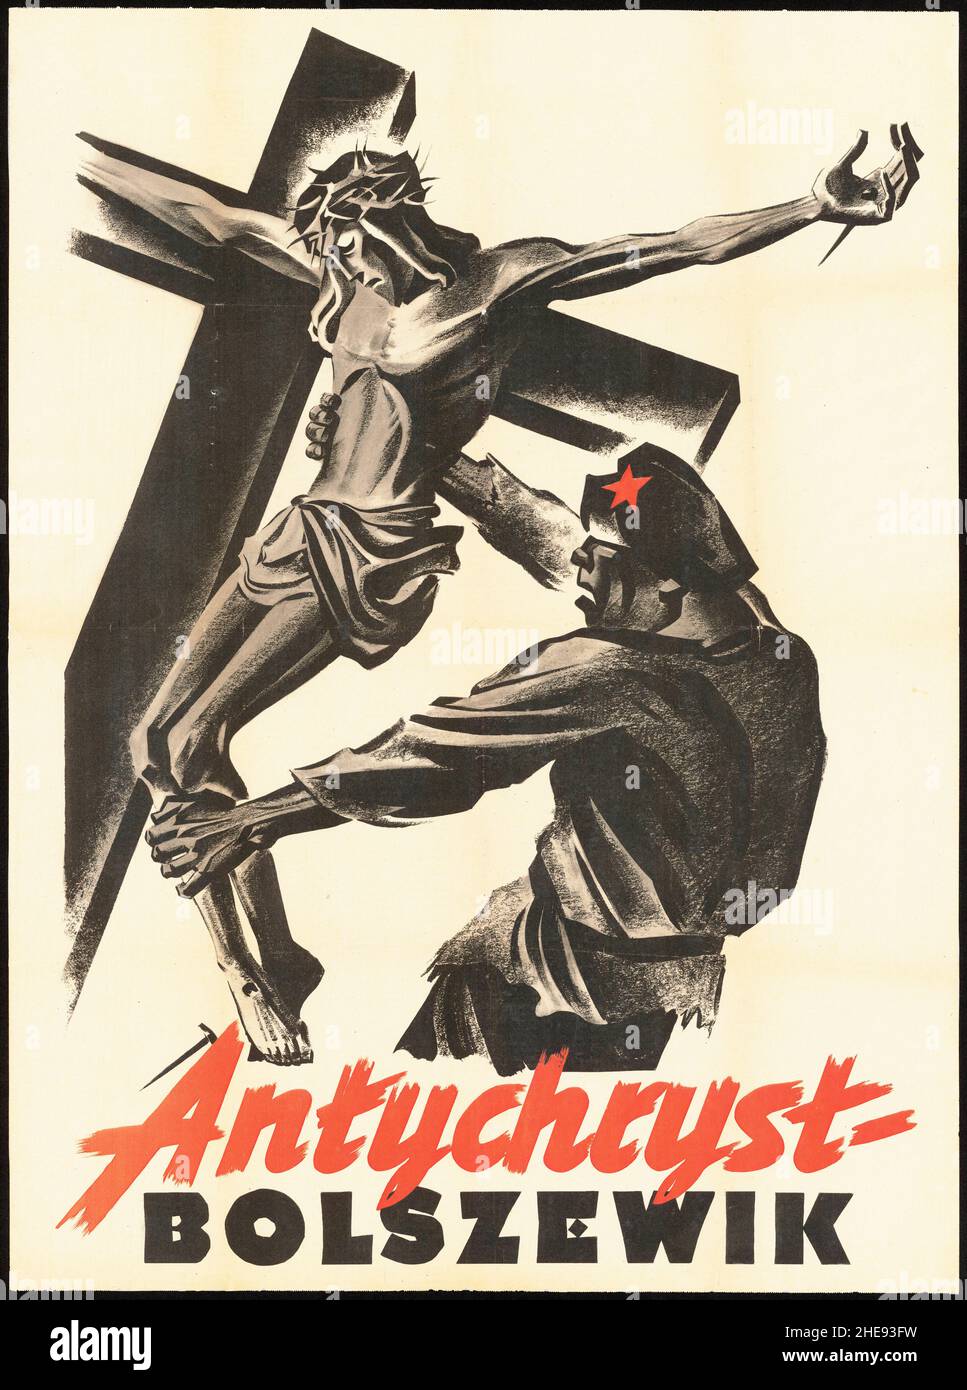 Une affiche de propagande anti-bolchevique polonaise montrant un soldat de l'Armée rouge tirant une statue du christ sur la croix avec la légende 'Antichrist bolchevique' Banque D'Images